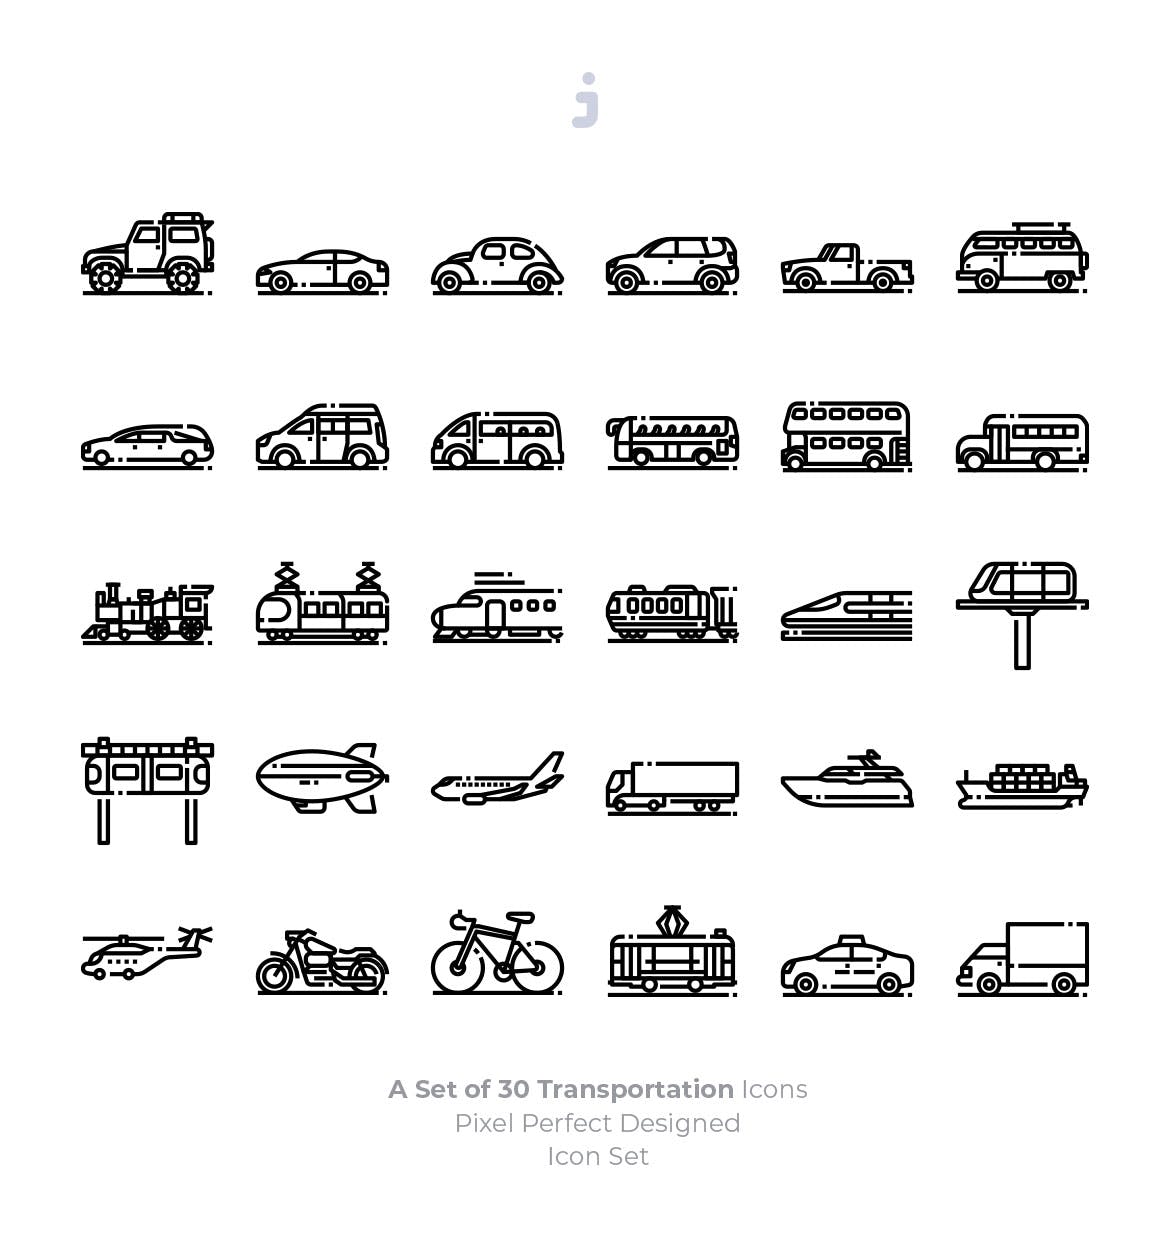 30枚现代交通工具矢量第一素材精选图标 30 Transportation Icons插图(2)